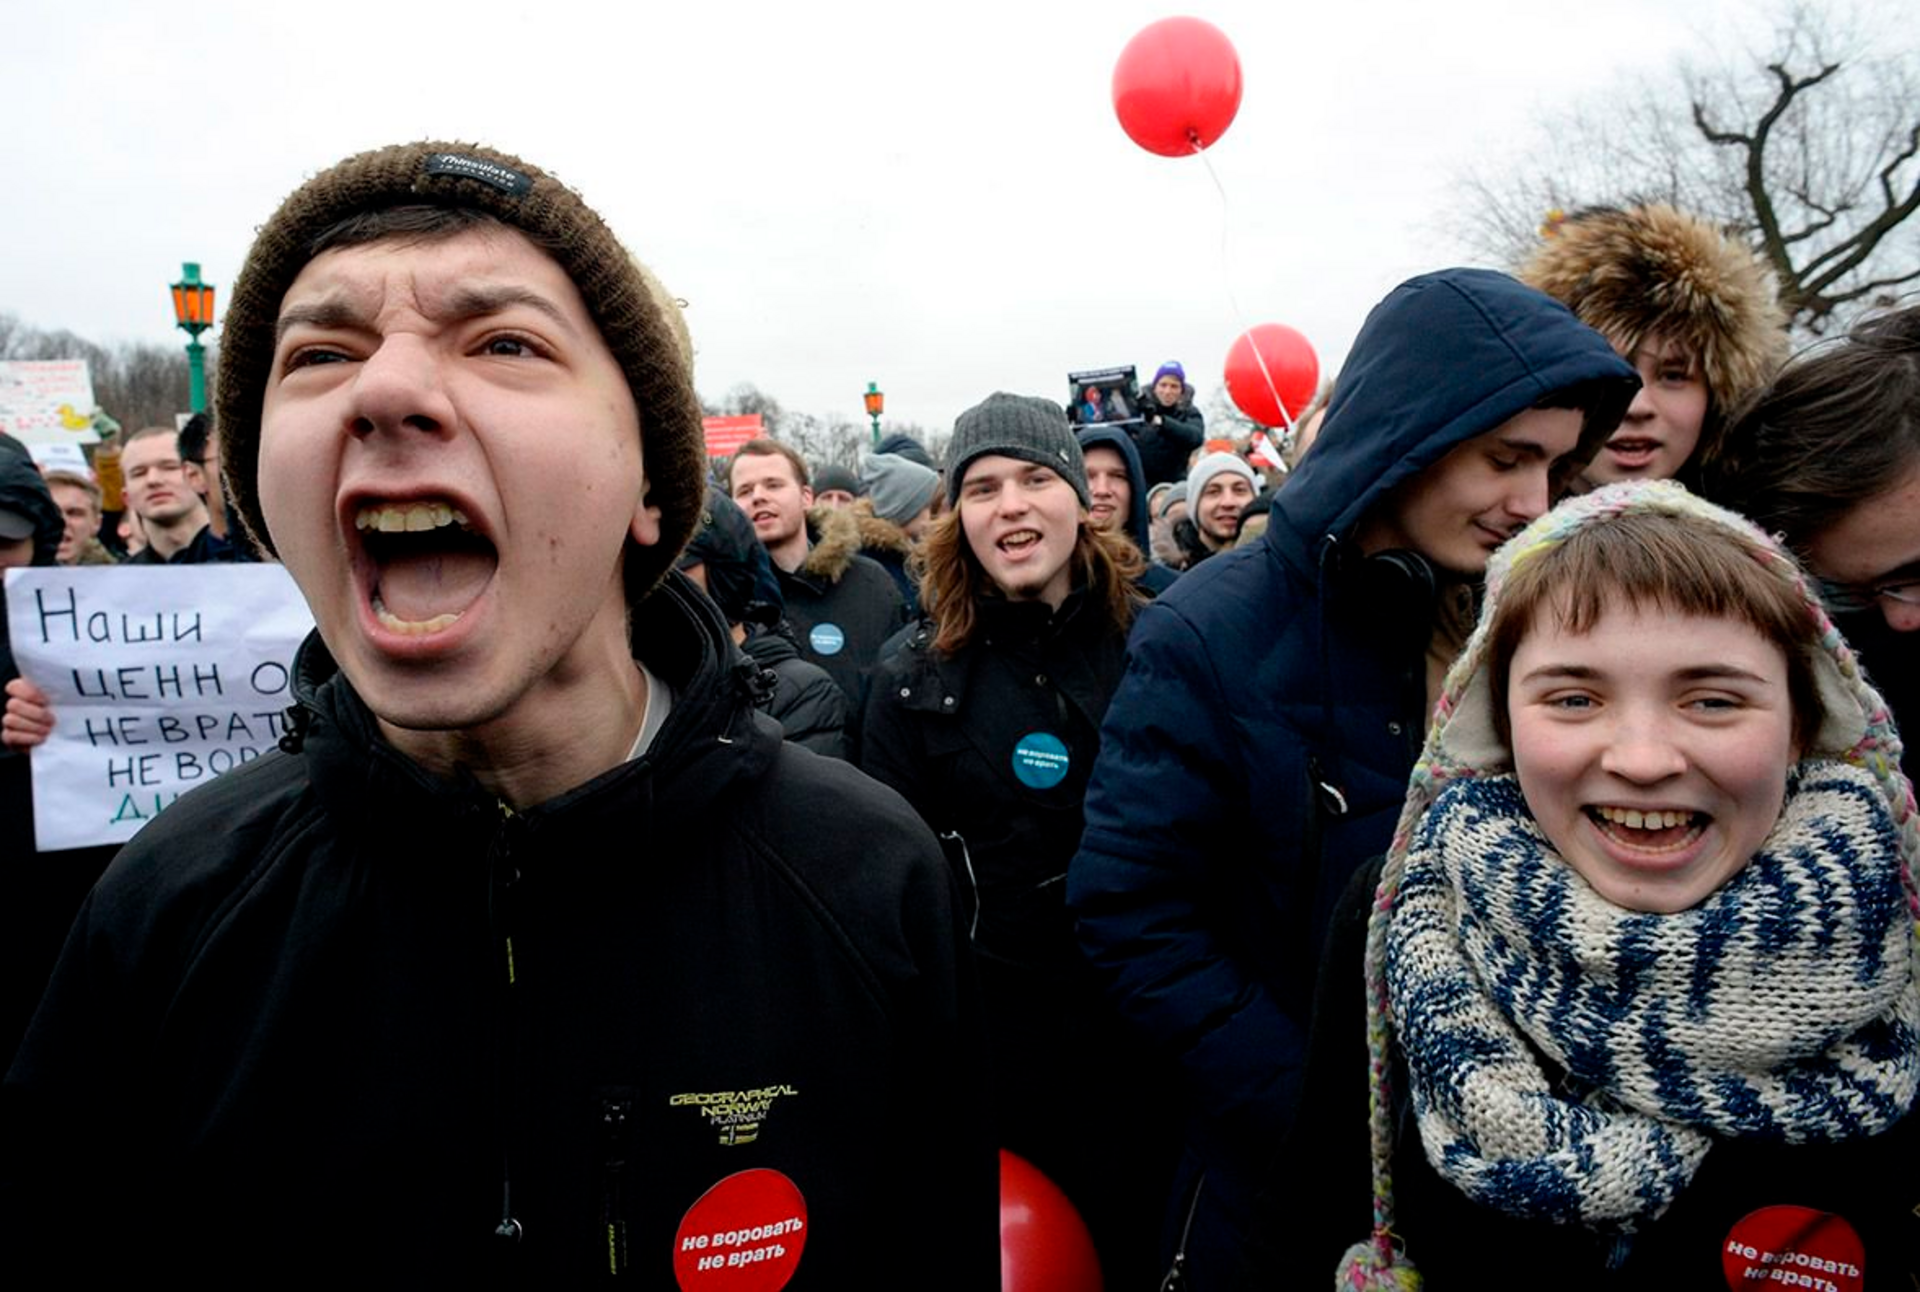 Дети на митинге навального. Школьники на митинге Навального. Молодежь на митинге. Подростки на митинге Навального.